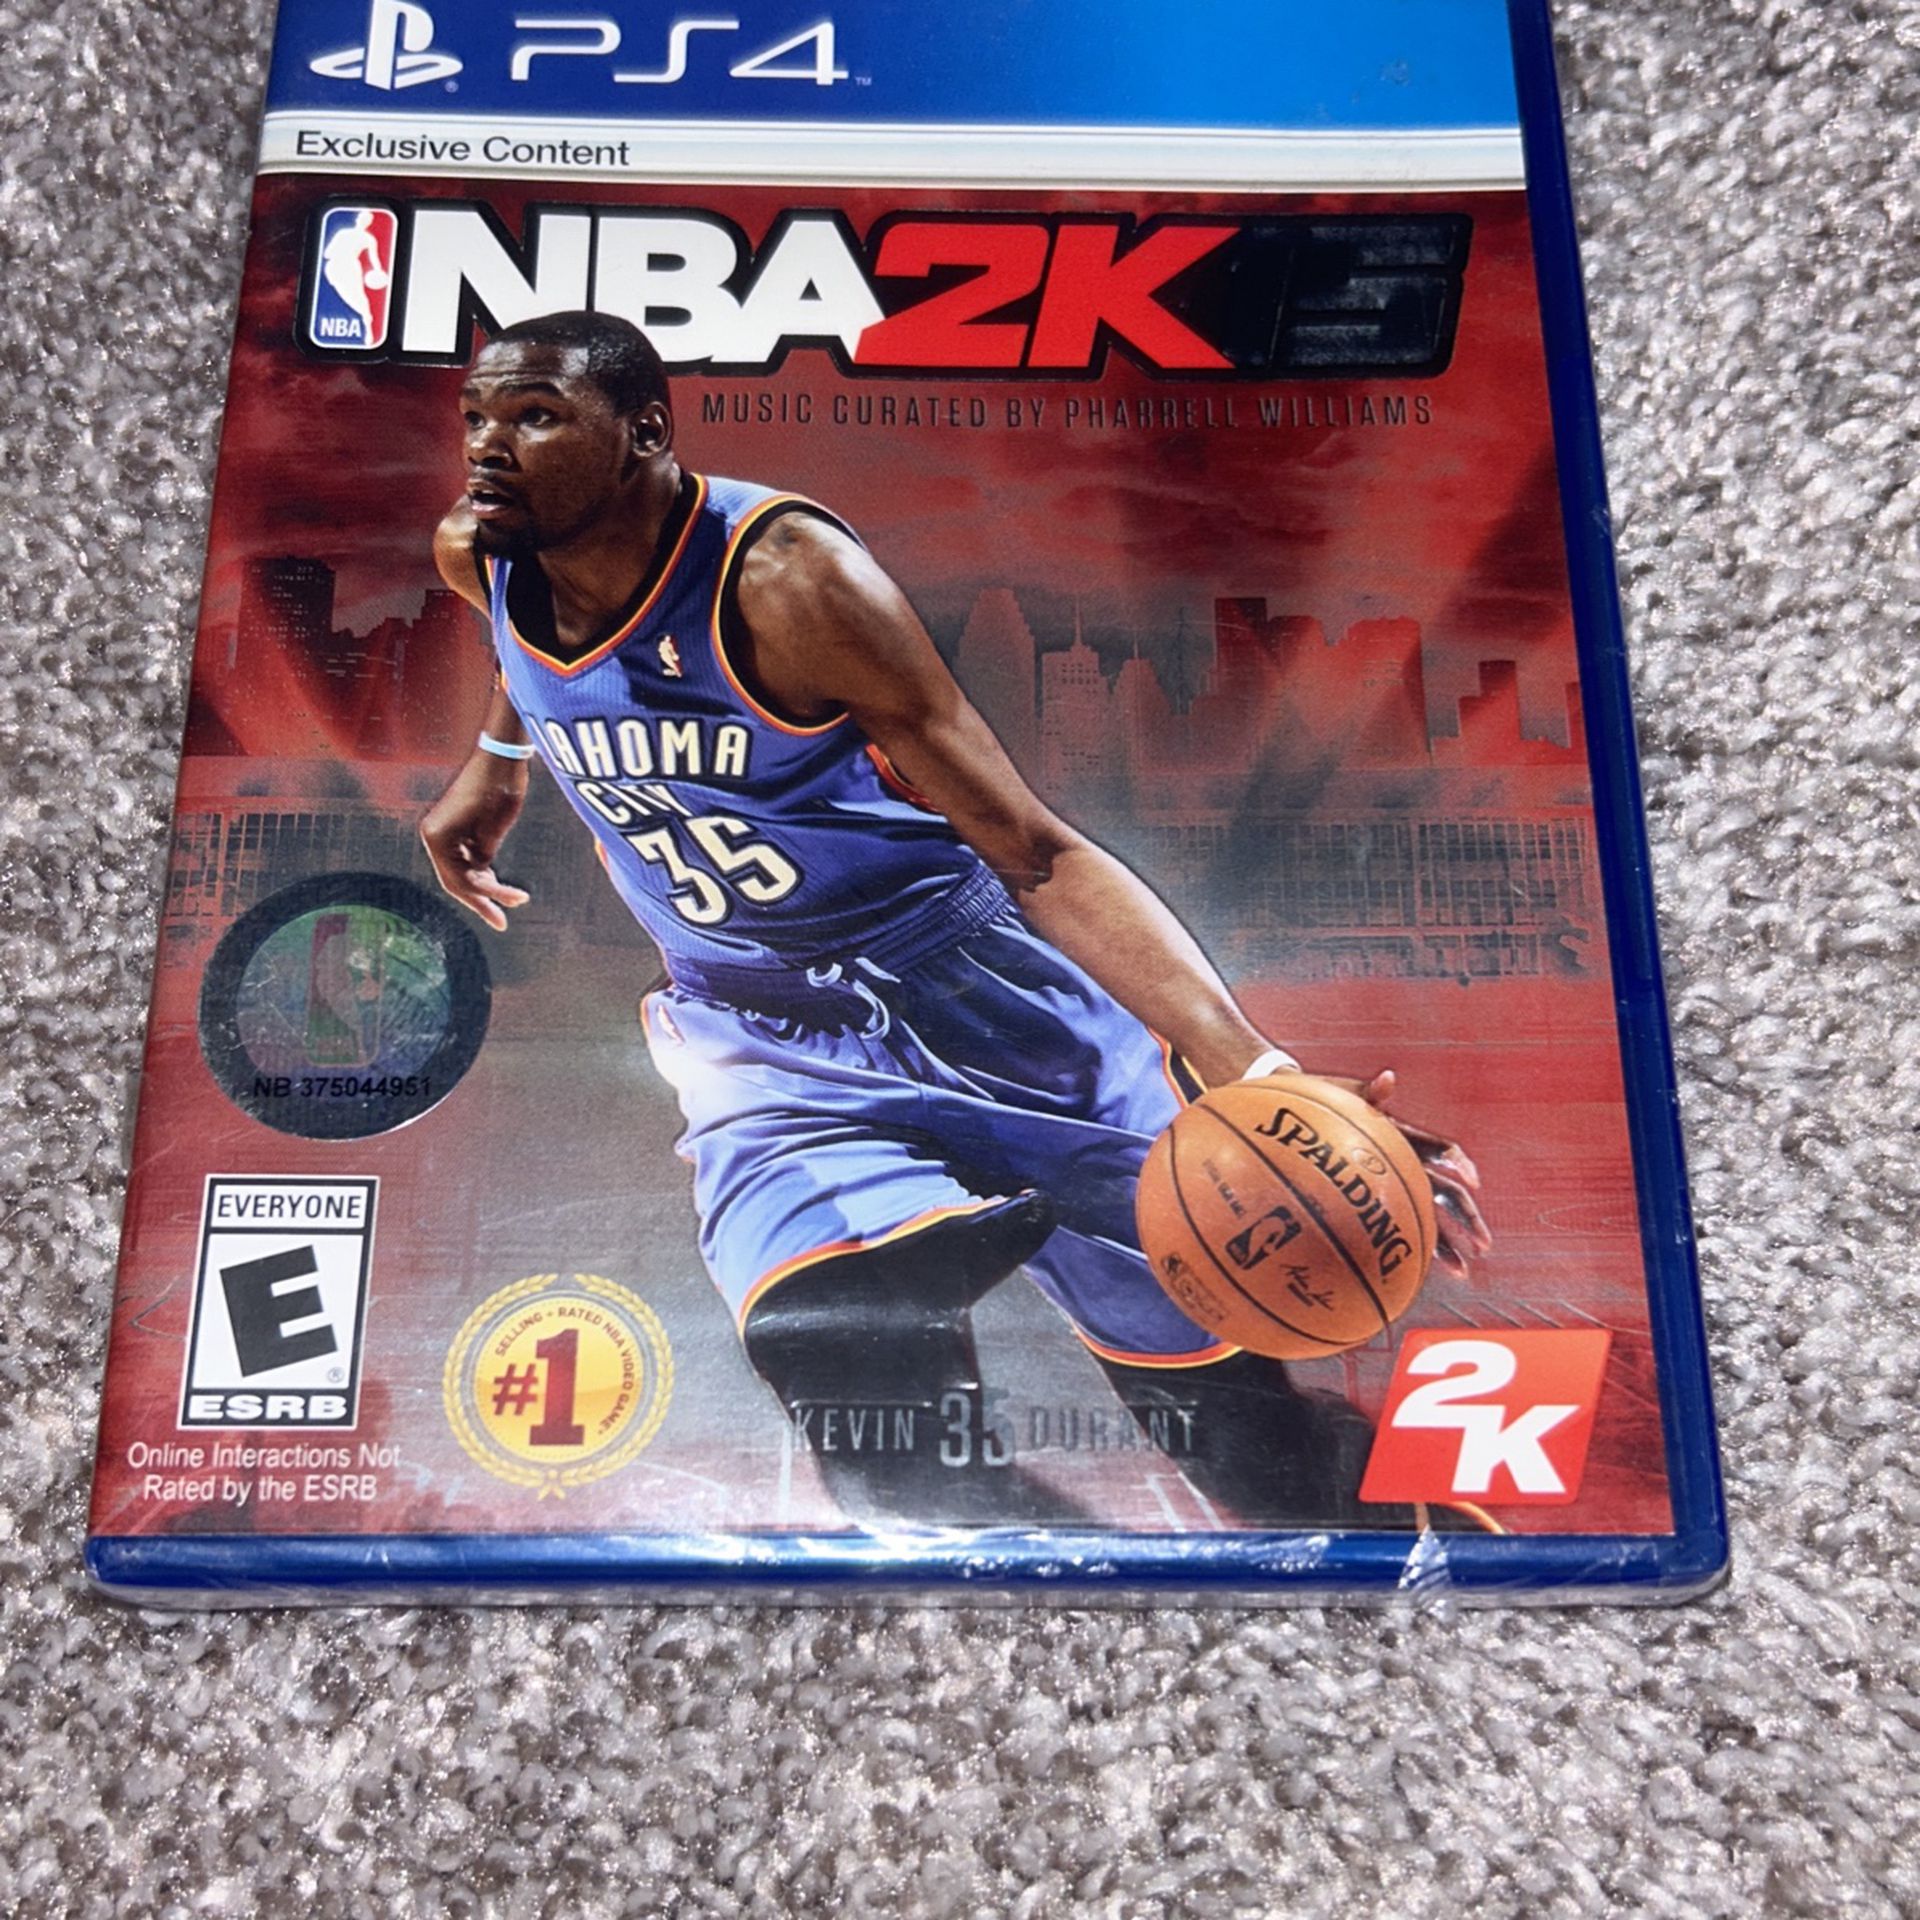 PS4 NBA 2k15